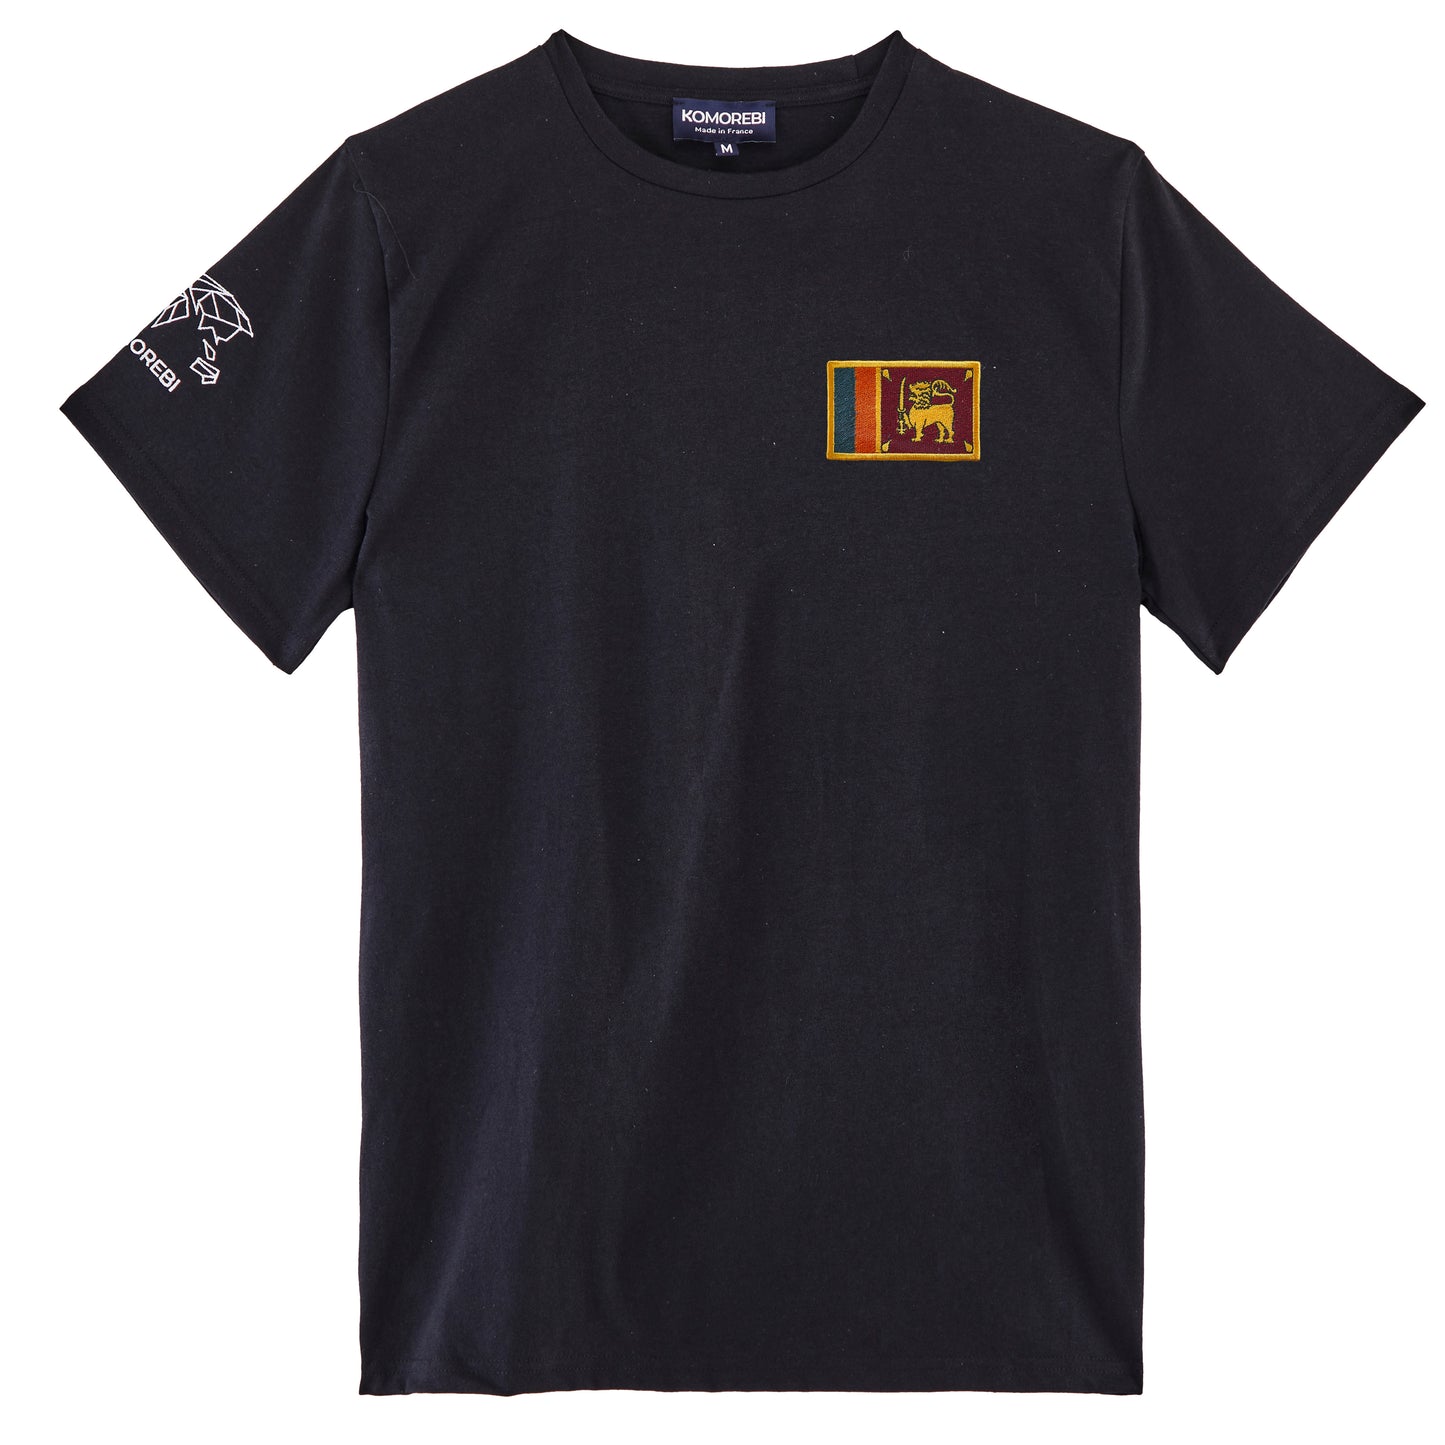 Sri Lanka • T shirt